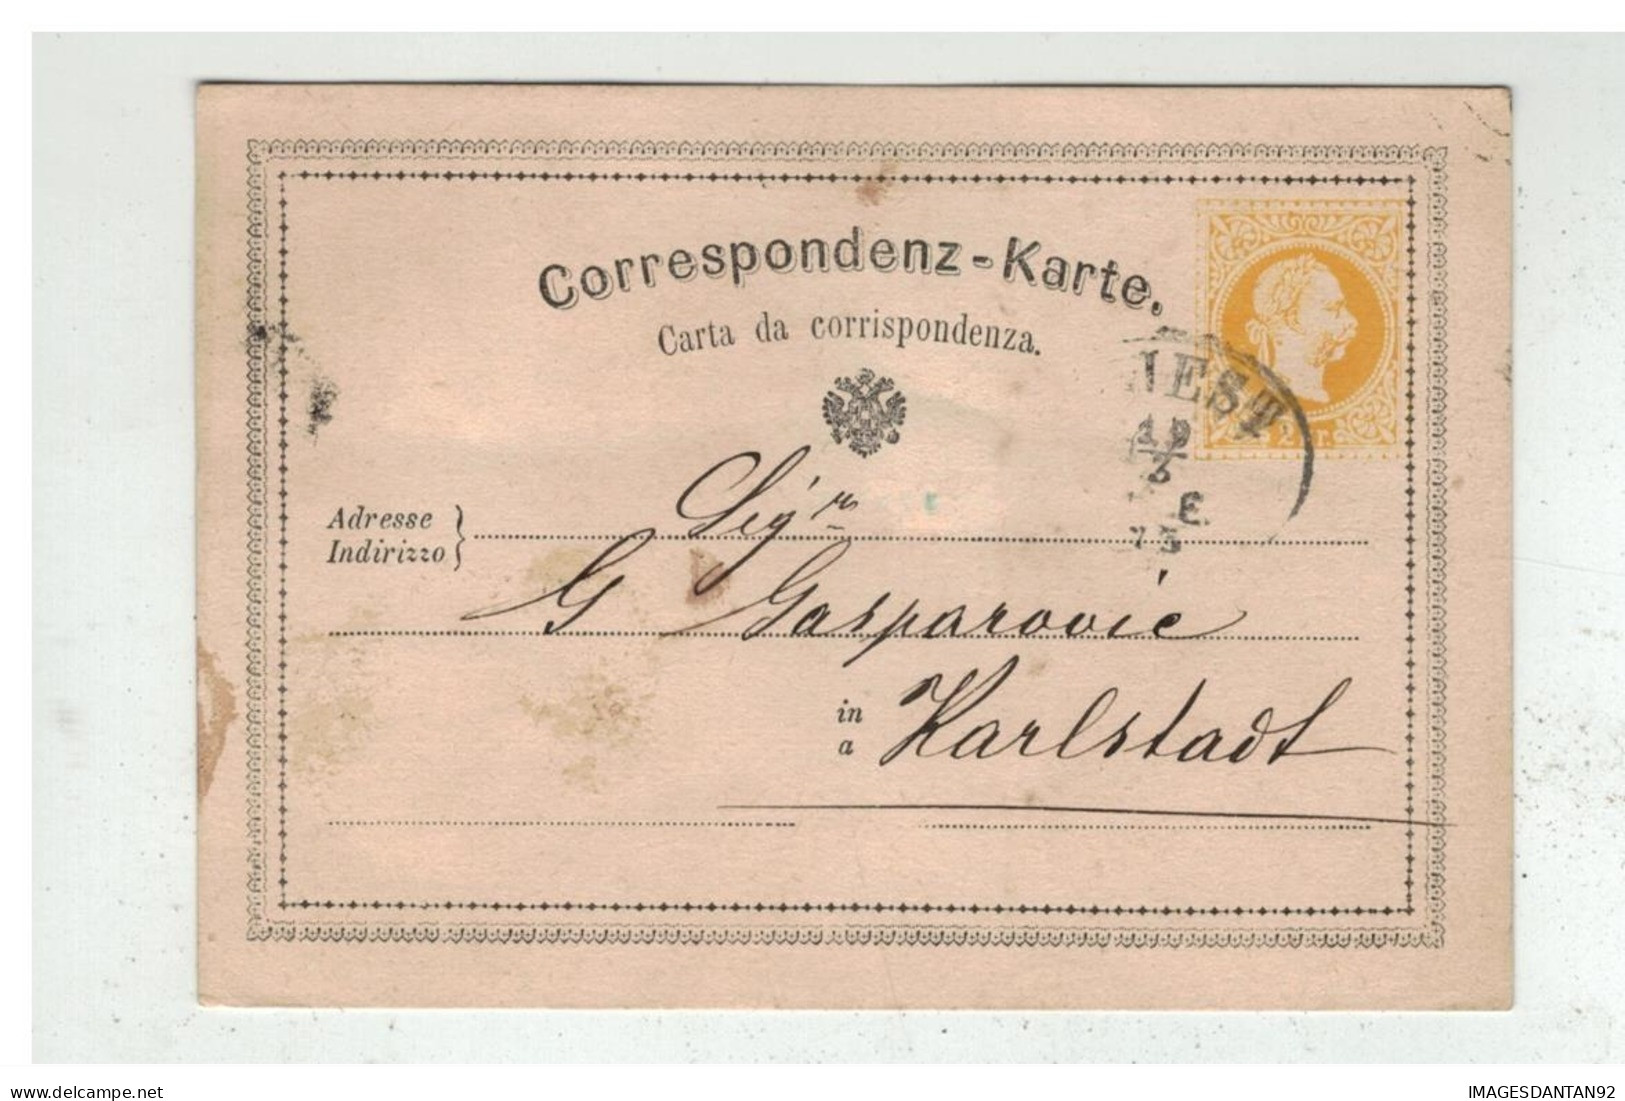 Autriche - Entier Postal 2 Kreuser De TRIEST à Destination De KARLSTADT KARLOVAC CROATIA 1873 - Entiers Postaux